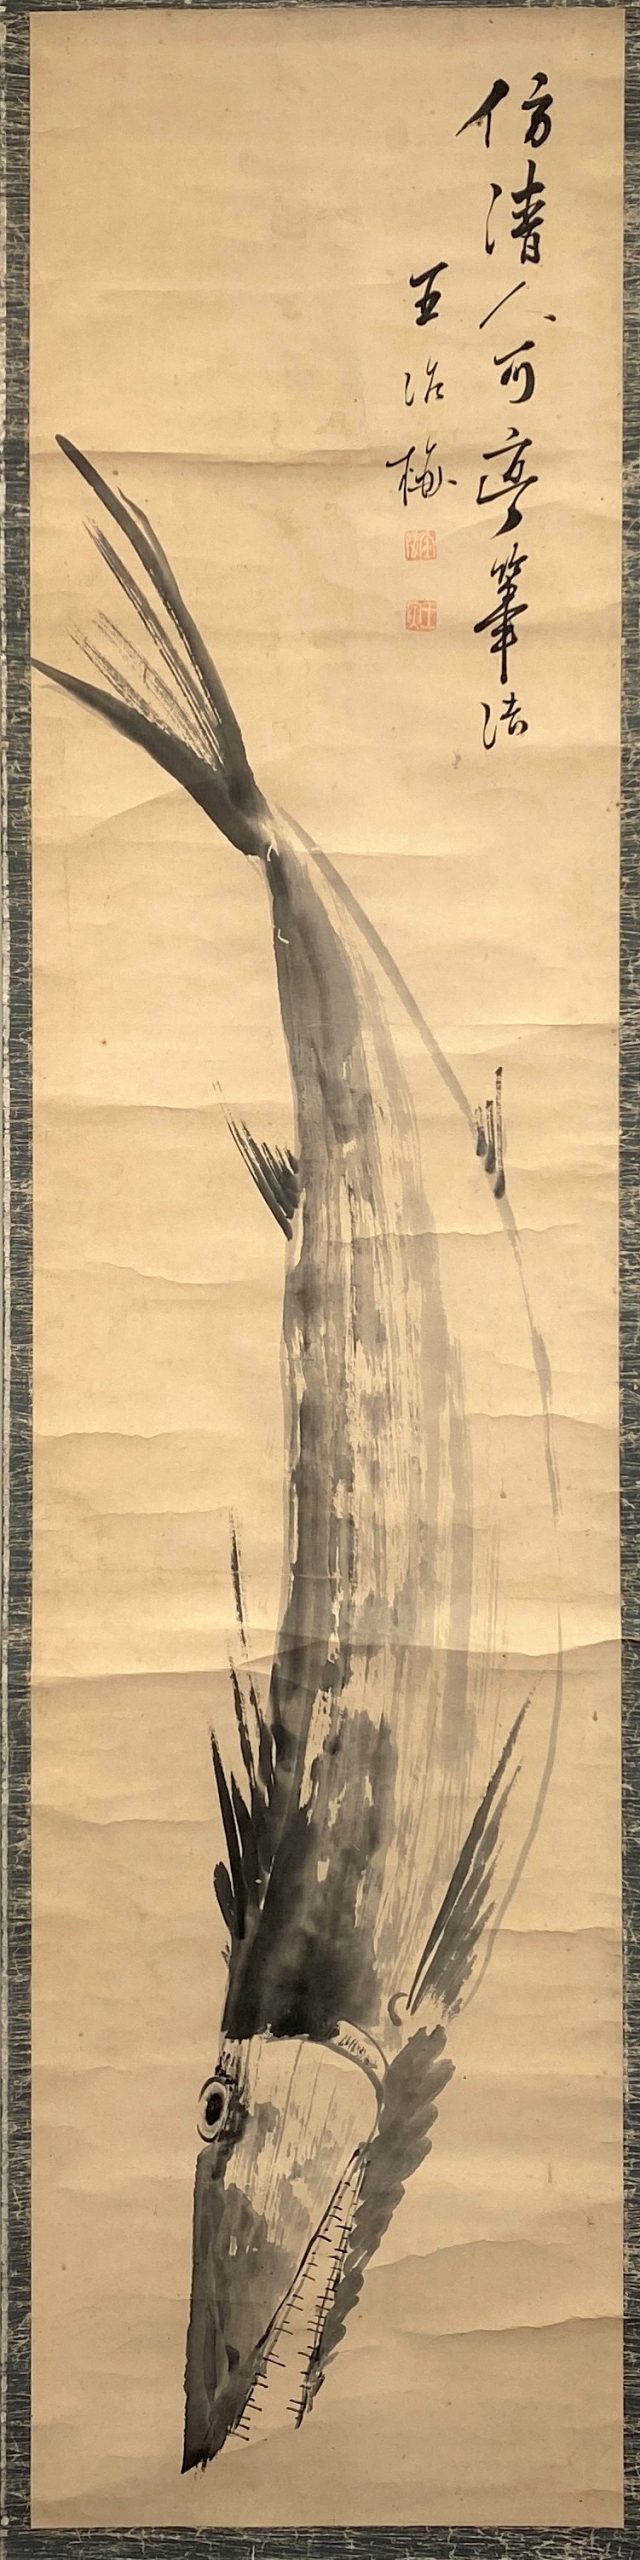 23657	「王冶梅」画 魚図 軸	132×31.5㎝